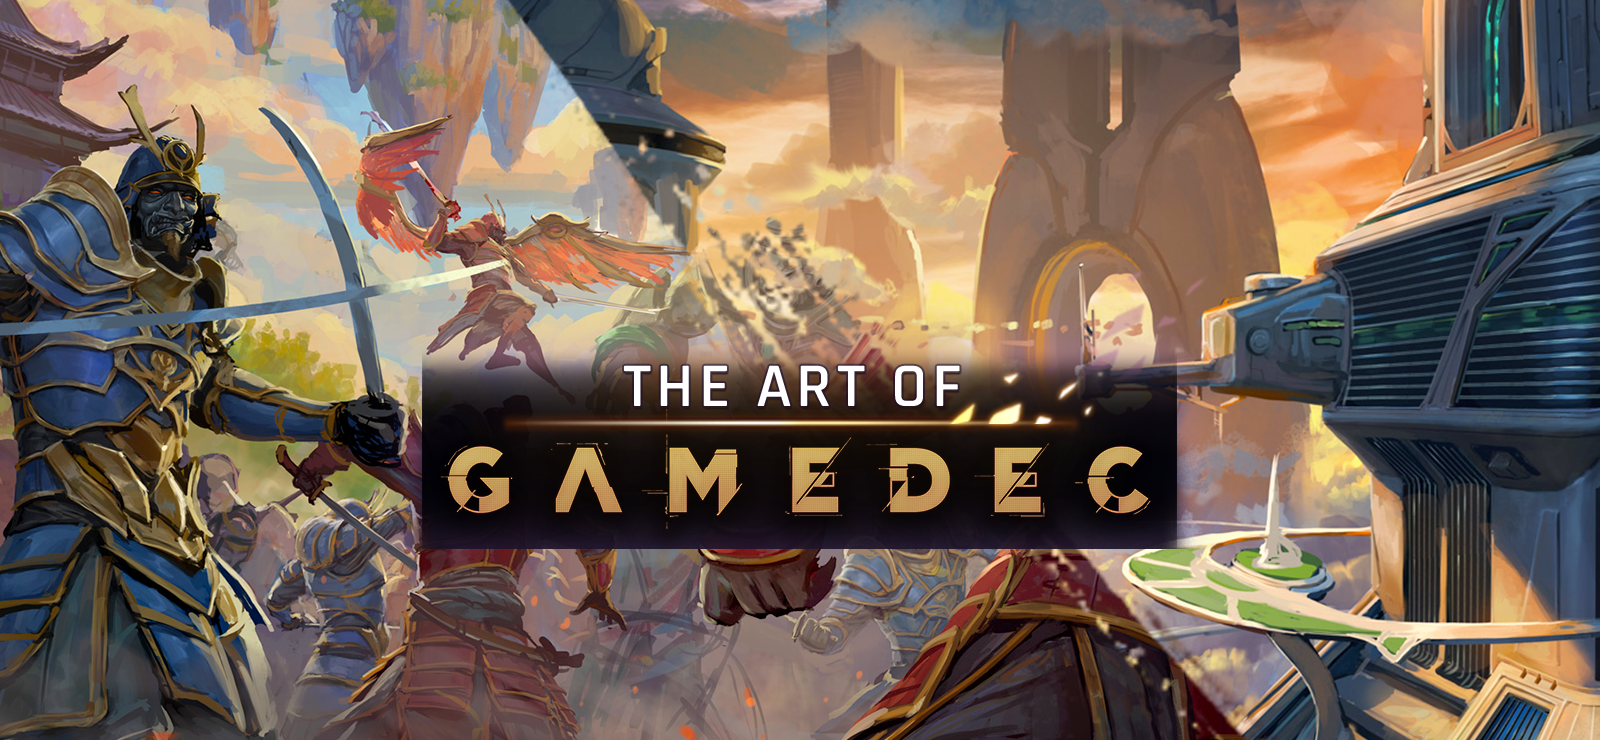 The Art Of Gamedec